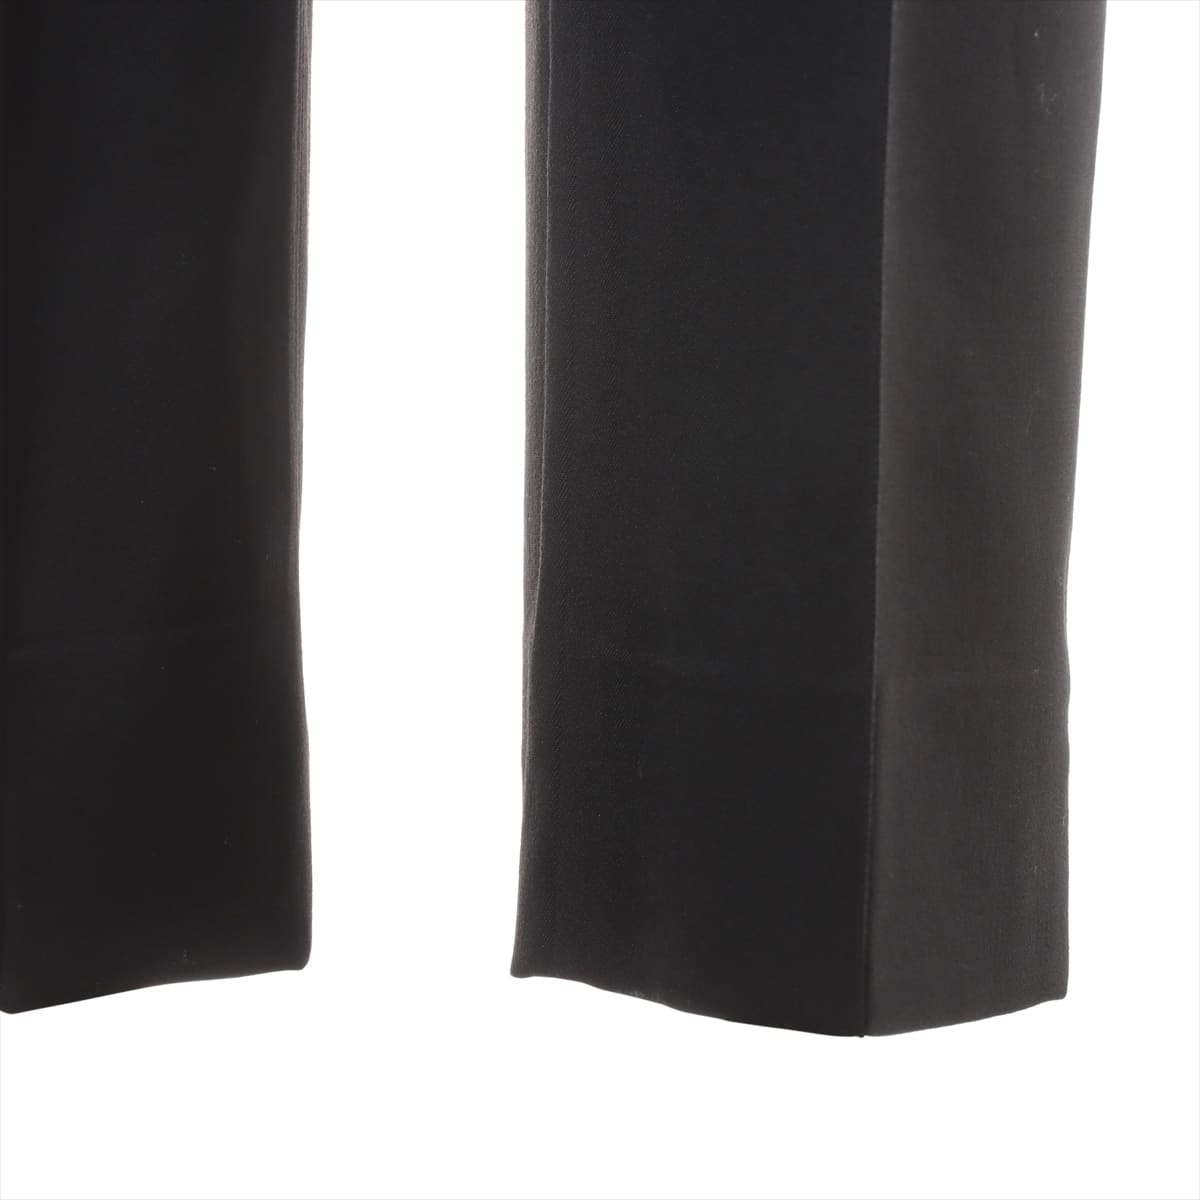 Hermès Wool x polyurethane Slacks 38 Ladies' Black